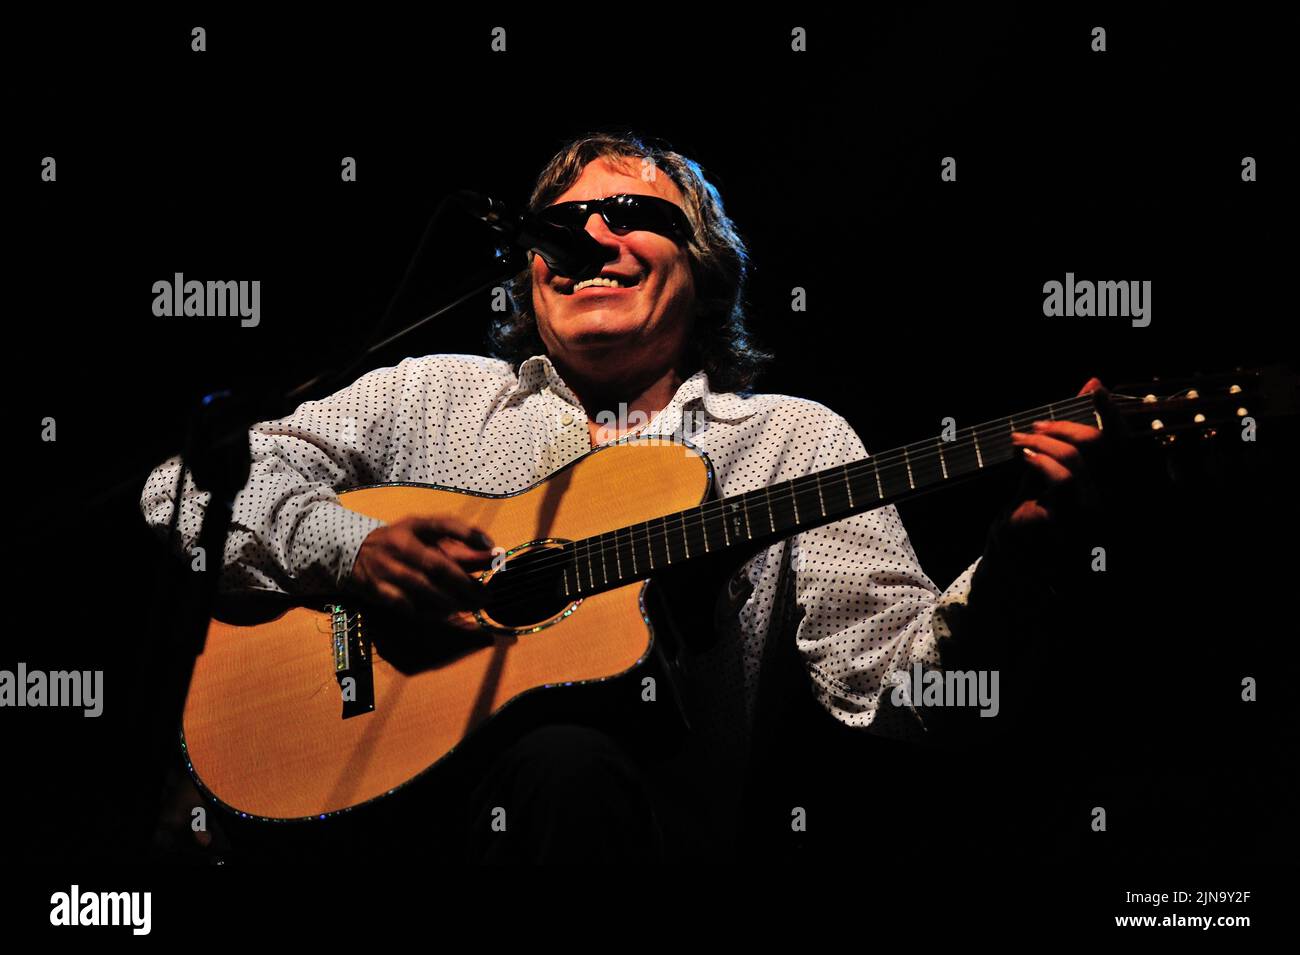 Der Puerto-ricanische Sänger und virtuose Gitarrist Jose Feliciano, der aufgrund eines angeborenen Glaukoms dauerhaft blind geboren wurde, wird während eines 'Live'-Konzerts auf der Bühne gezeigt. Jose Feliciano (geboren am 10. September 1945) ist ein Puerto-ricanischer virtuoser Gitarrist, Sänger und Komponist, Foto Kazimierz Jurewicz Stockfoto